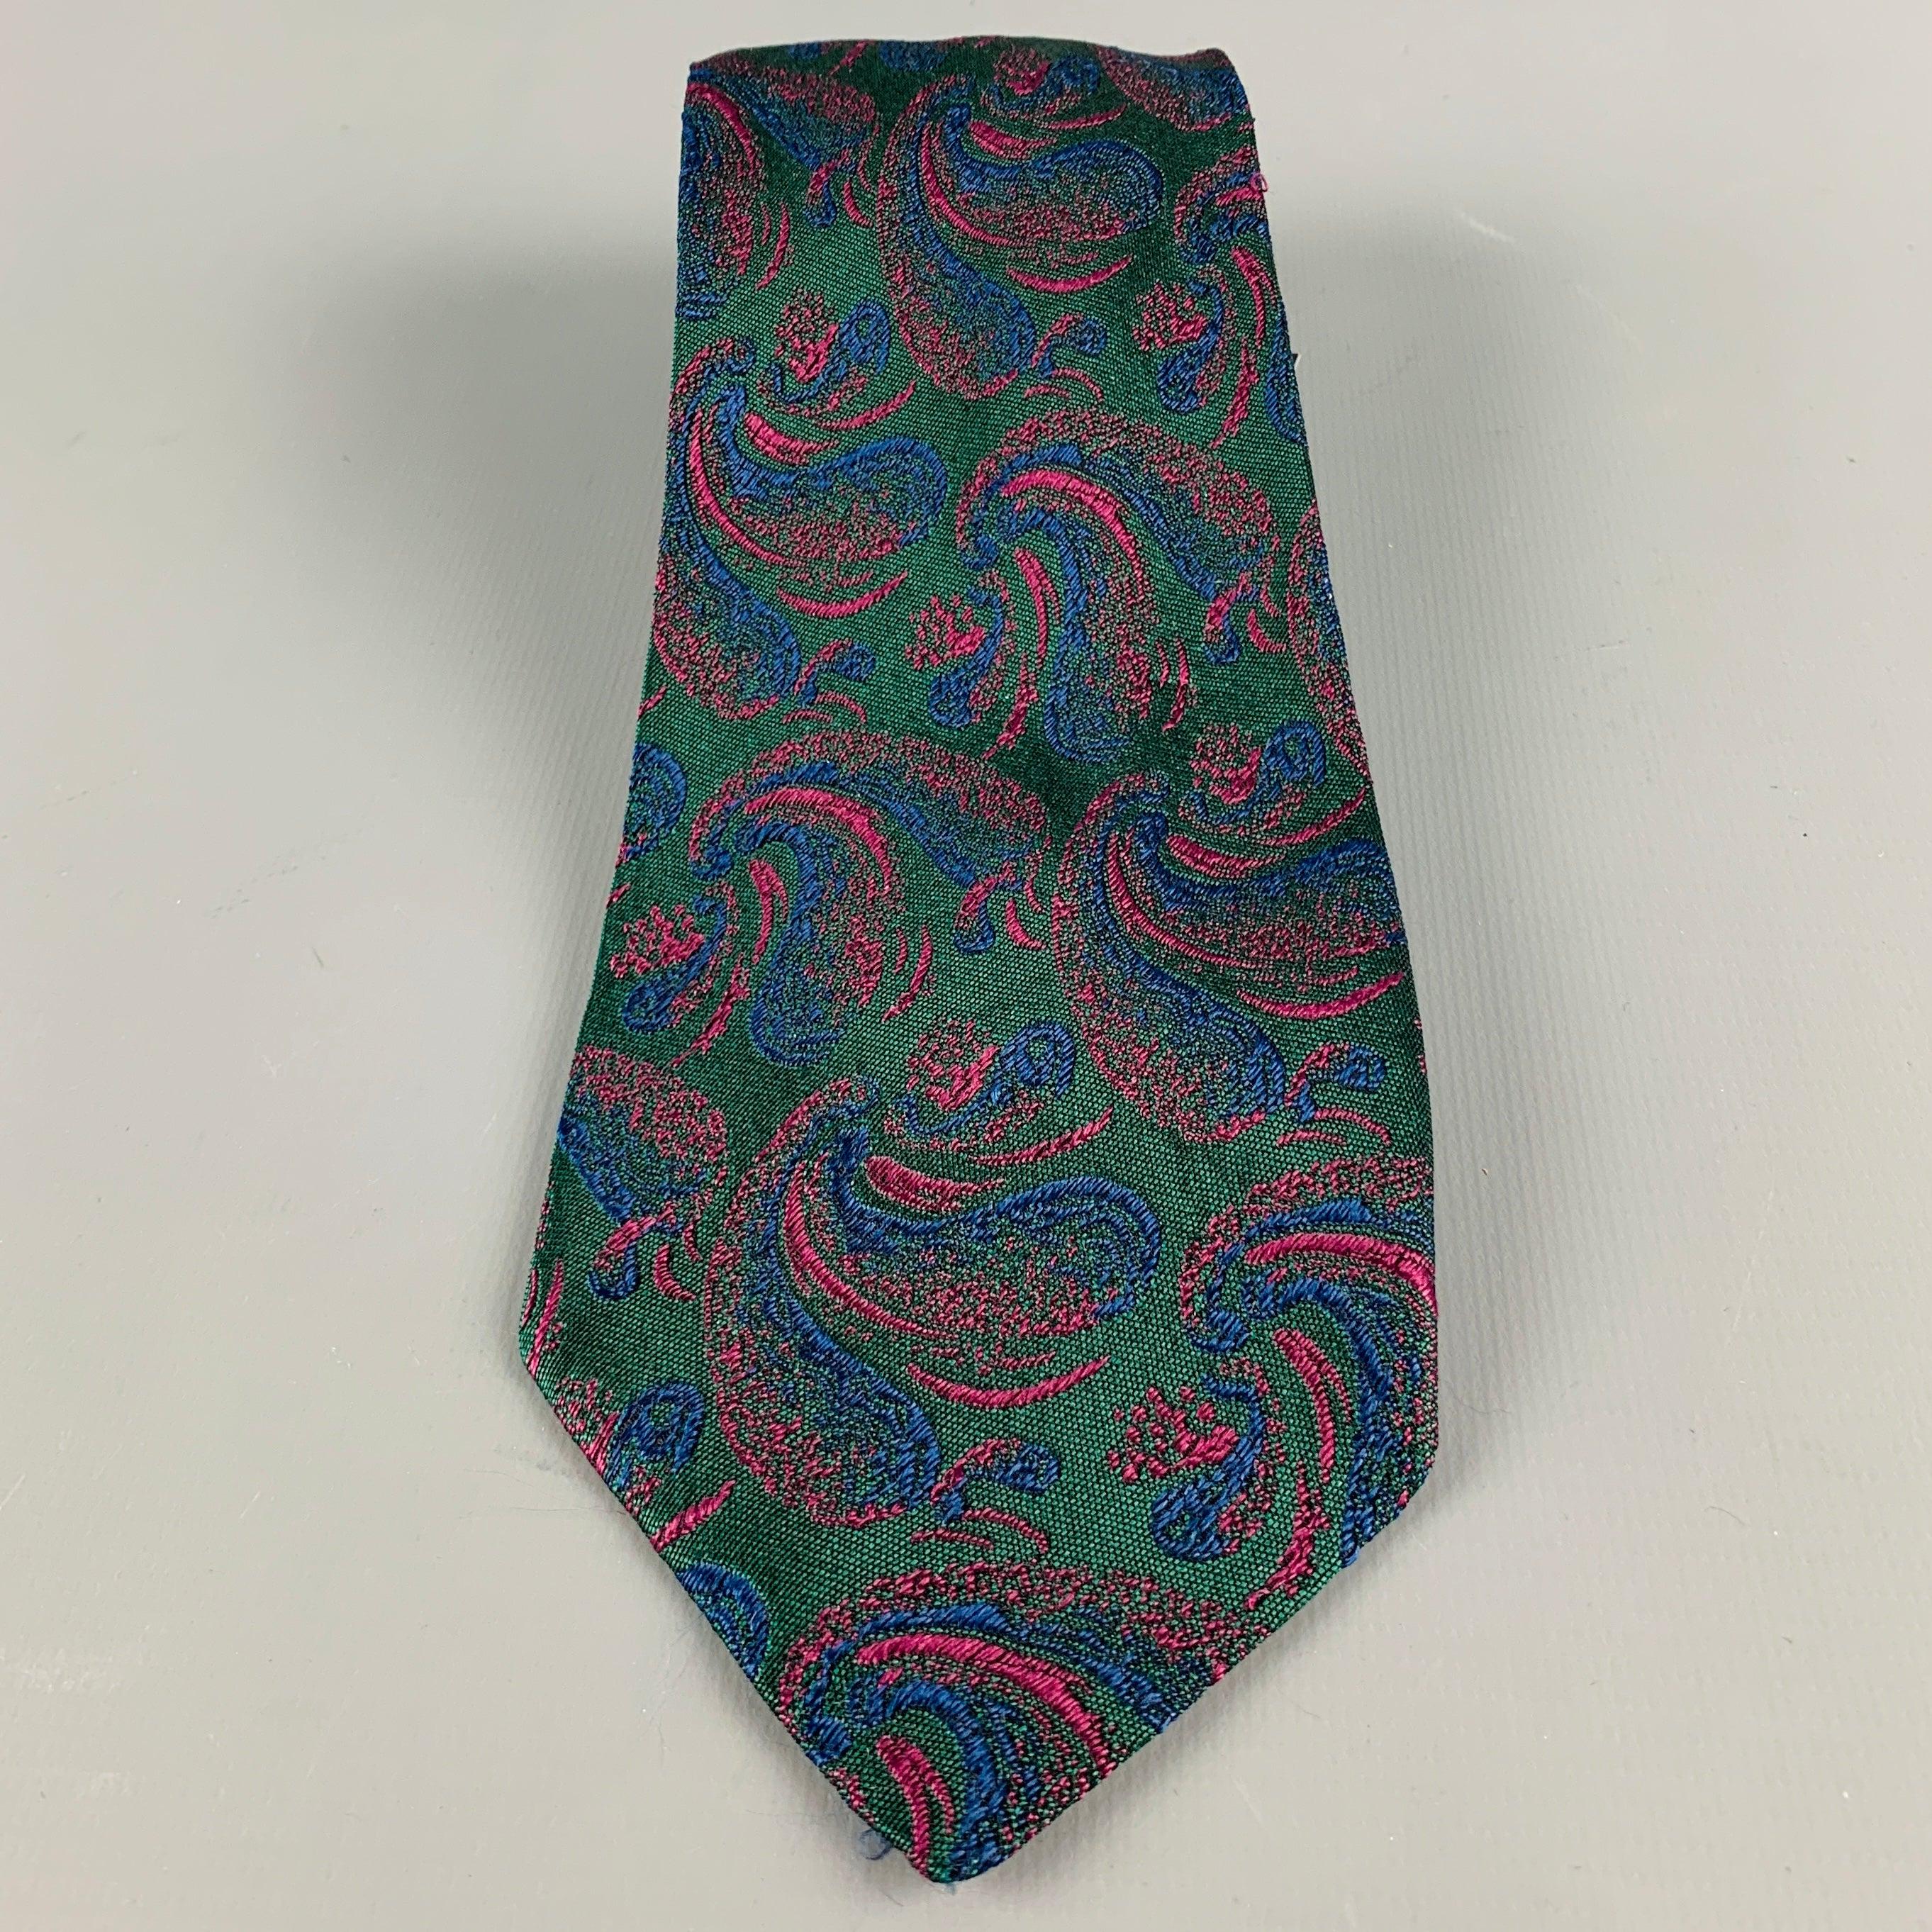 Vintage FENDI Krawatte aus grünem Seidenstoff mit lila Paisley-Jacquard-Muster. Handgefertigt in Italien, ausgezeichneter gebrauchter Zustand. 

Abmessungen: 
  Breite: 3,25 Zoll Länge: 58 Zoll 
  
  
 
Referenz-Nr.: 128760
Kategorie: Krawatte
Mehr